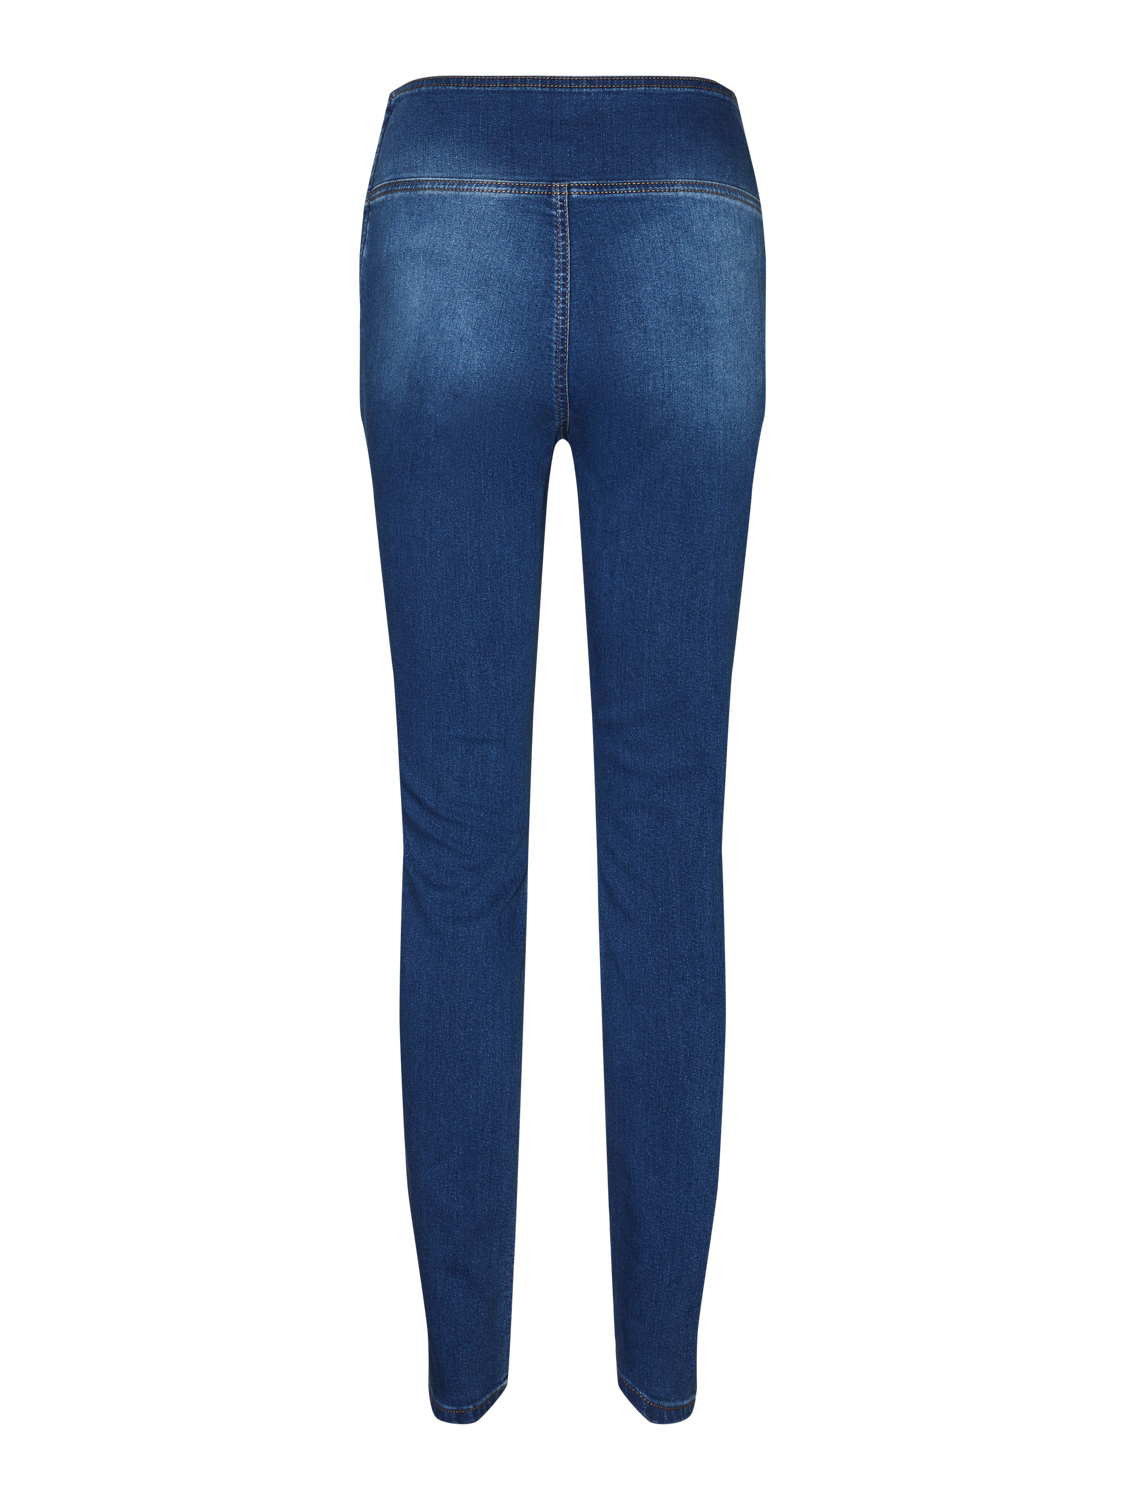 MAMA.LICIOUS Jeans Jegging Fit Vita media -Medium Blue Denim - 20020040